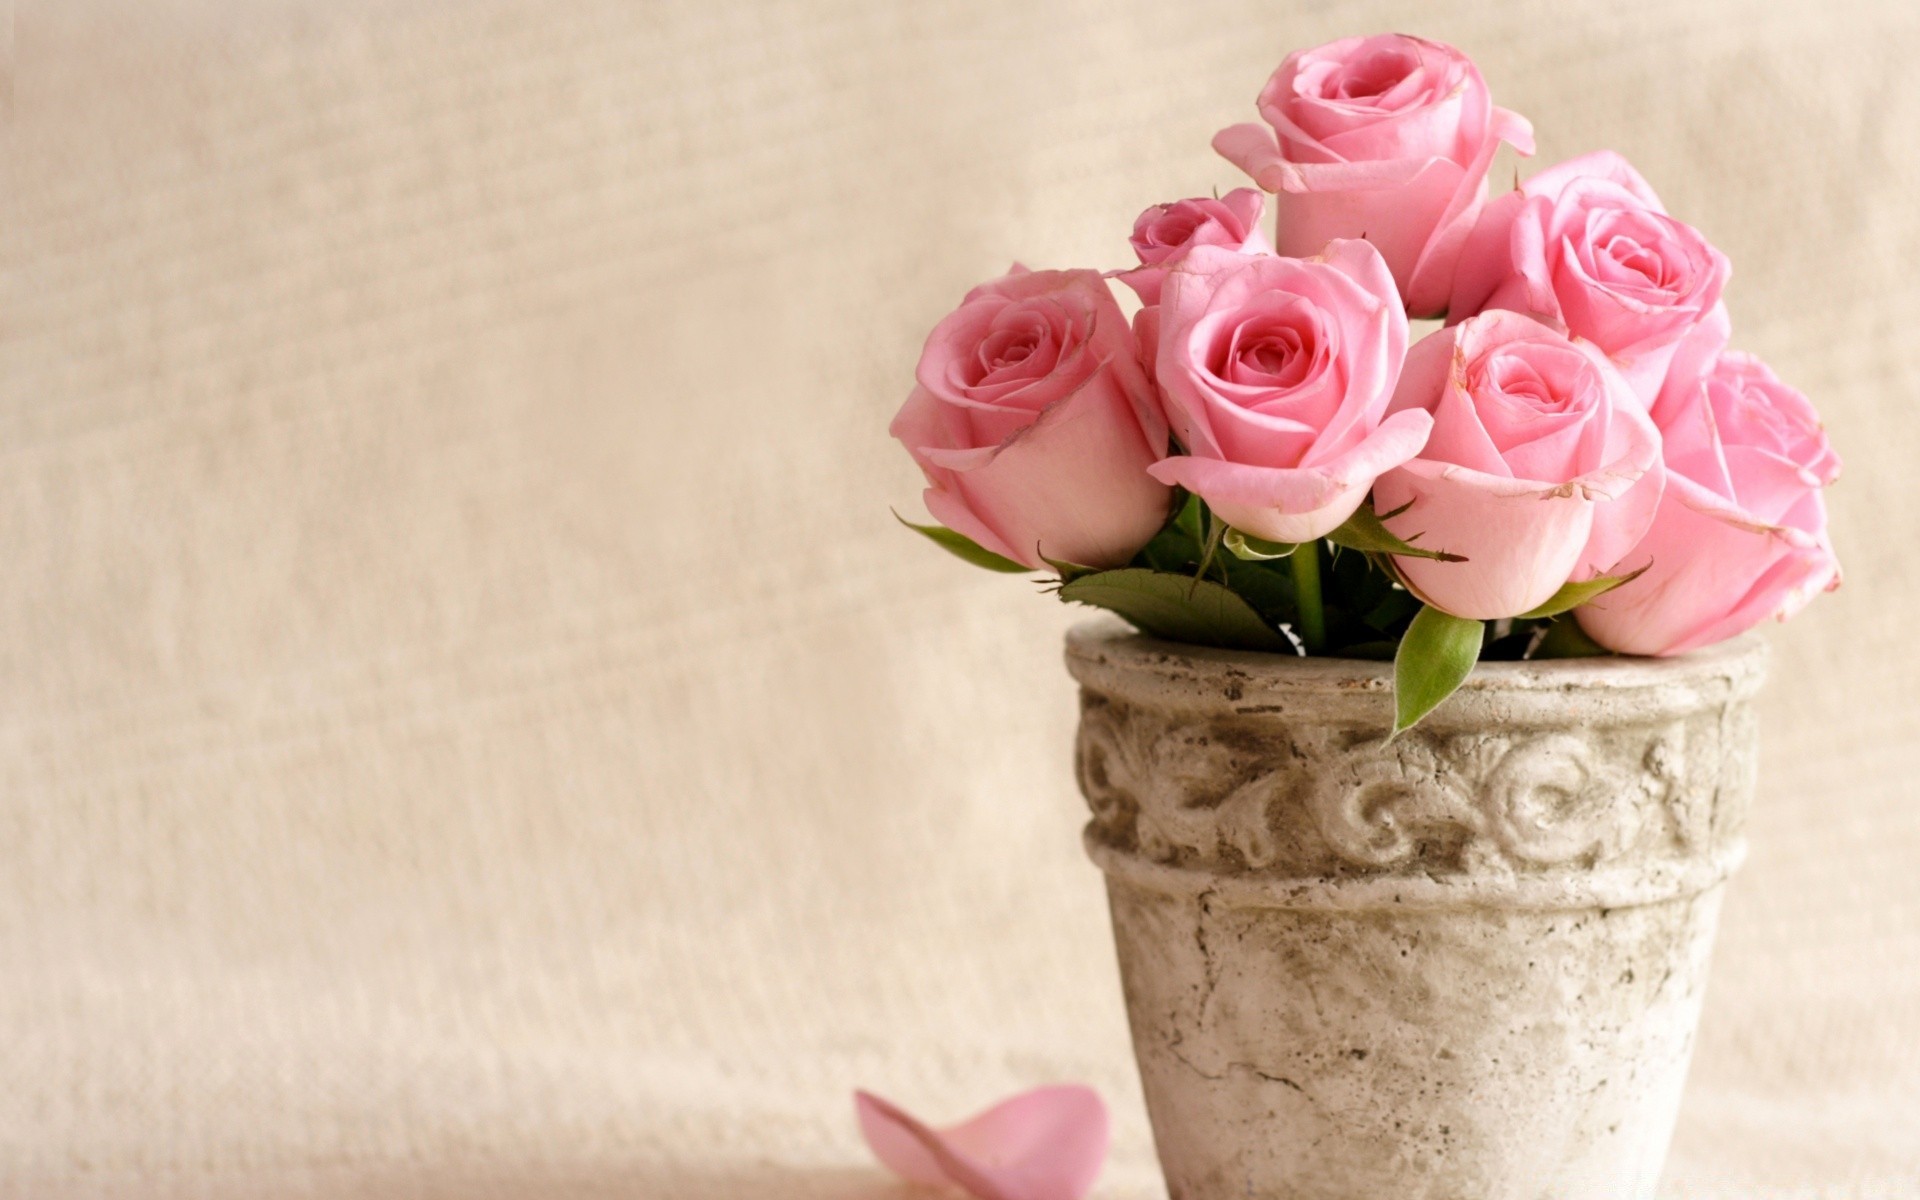 романтика цветок роза букет украшения любовь цветочные ваза свадьба лист флора подарок лепесток день рождения романтический рабочего стола